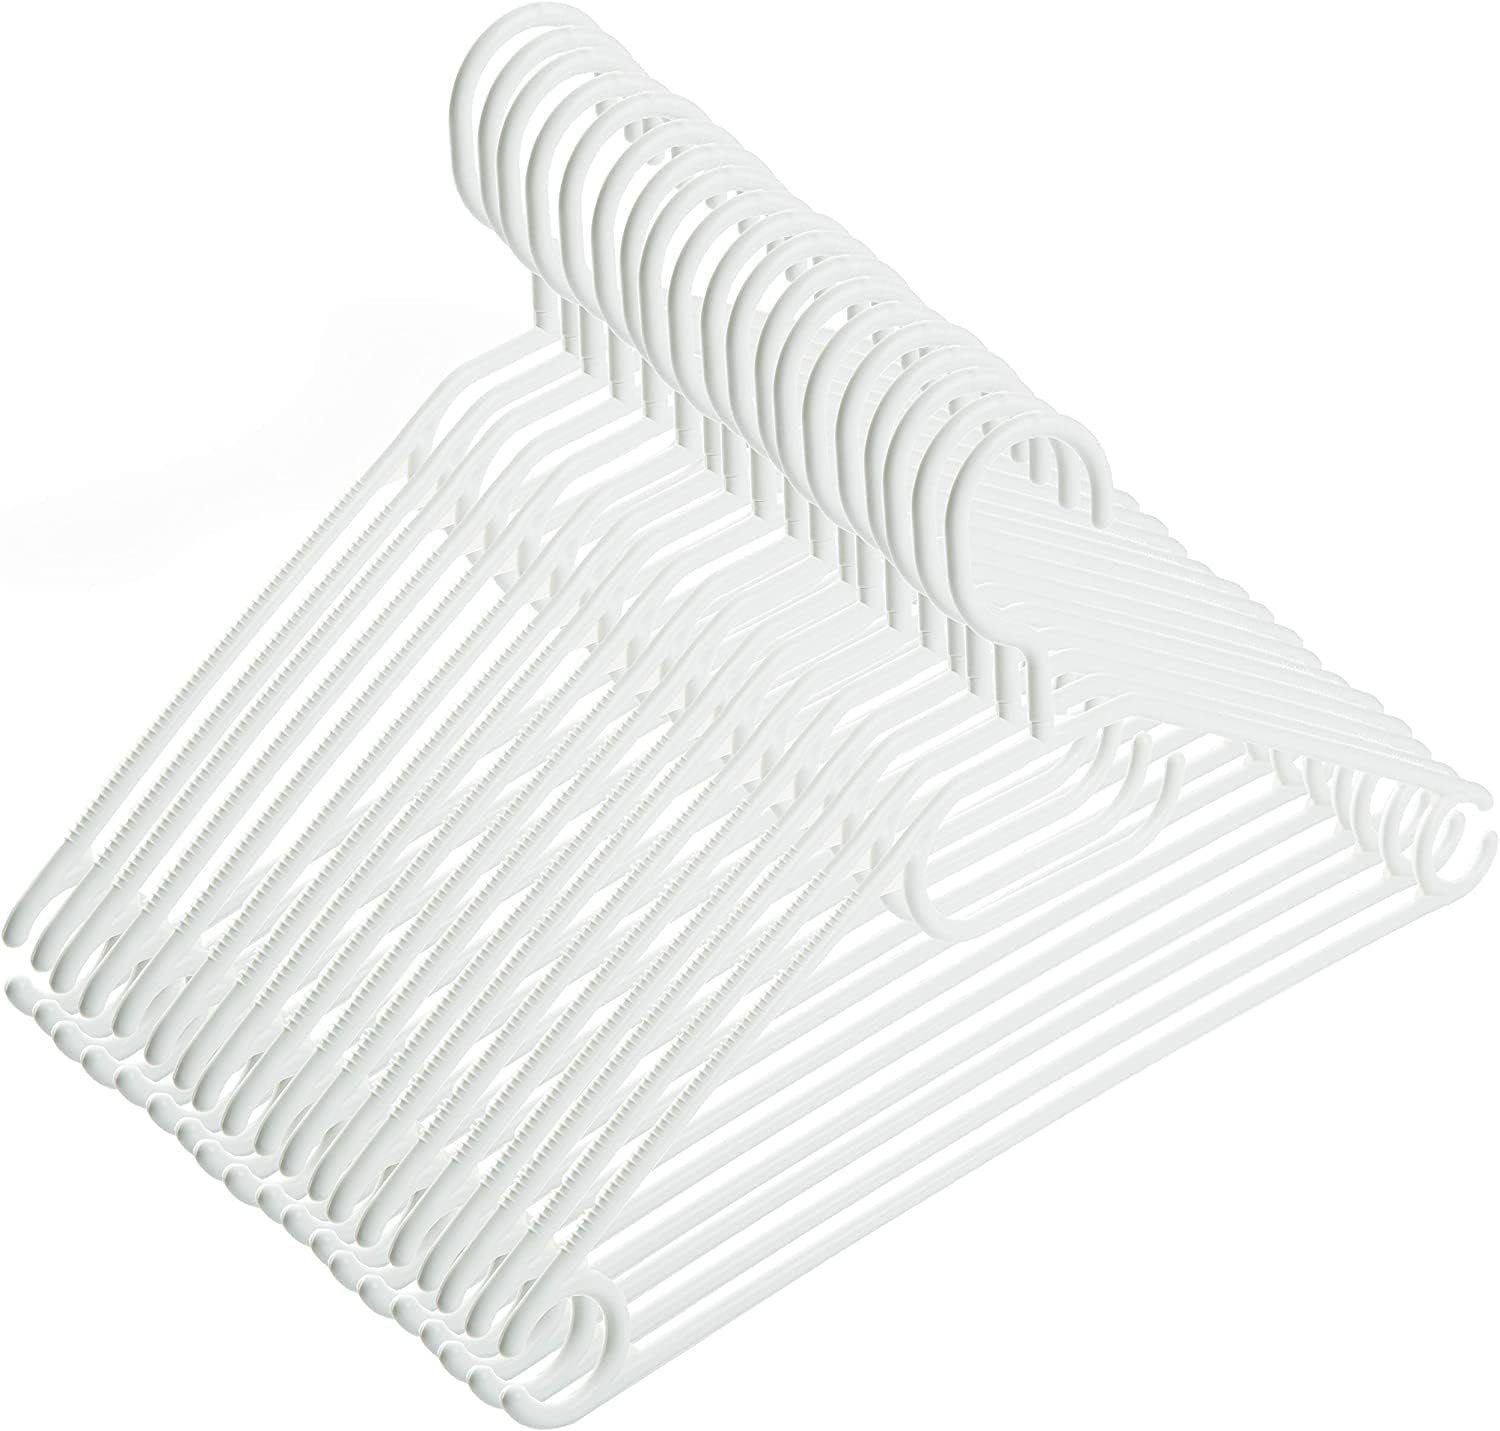 Haken, cm, Kunststoff platzsparend weiß 41 drehbaren Kleiderbügel Centi 100 Kleiderbügel Kleiderbügel weiß mit Plastik